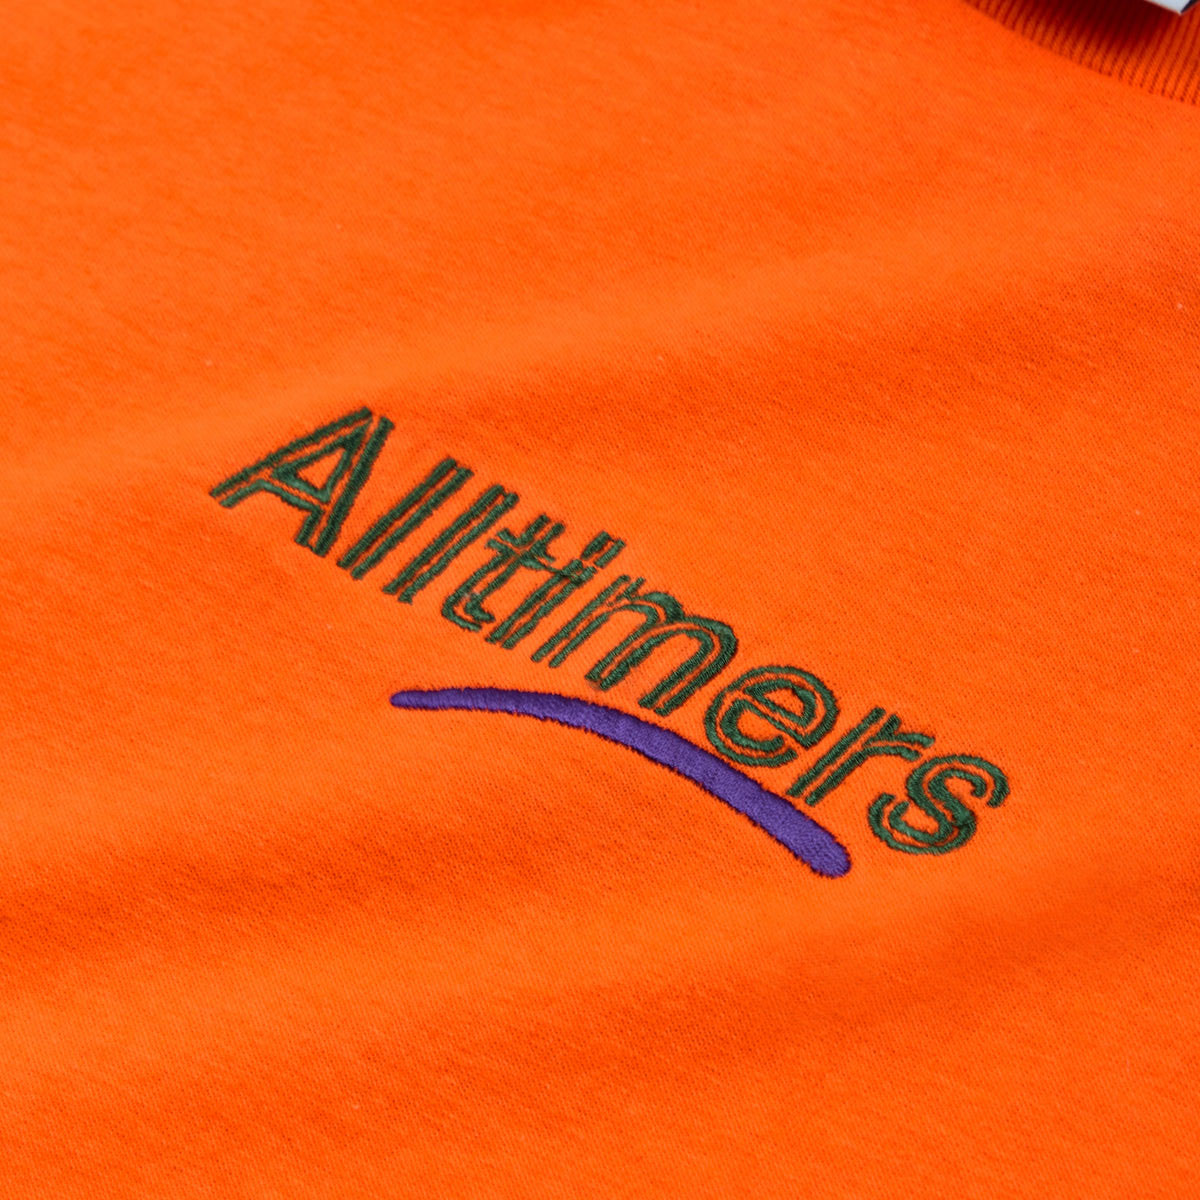 ALLTIMERS - Centered Estate Embroidered Long Sleeve "Orange"